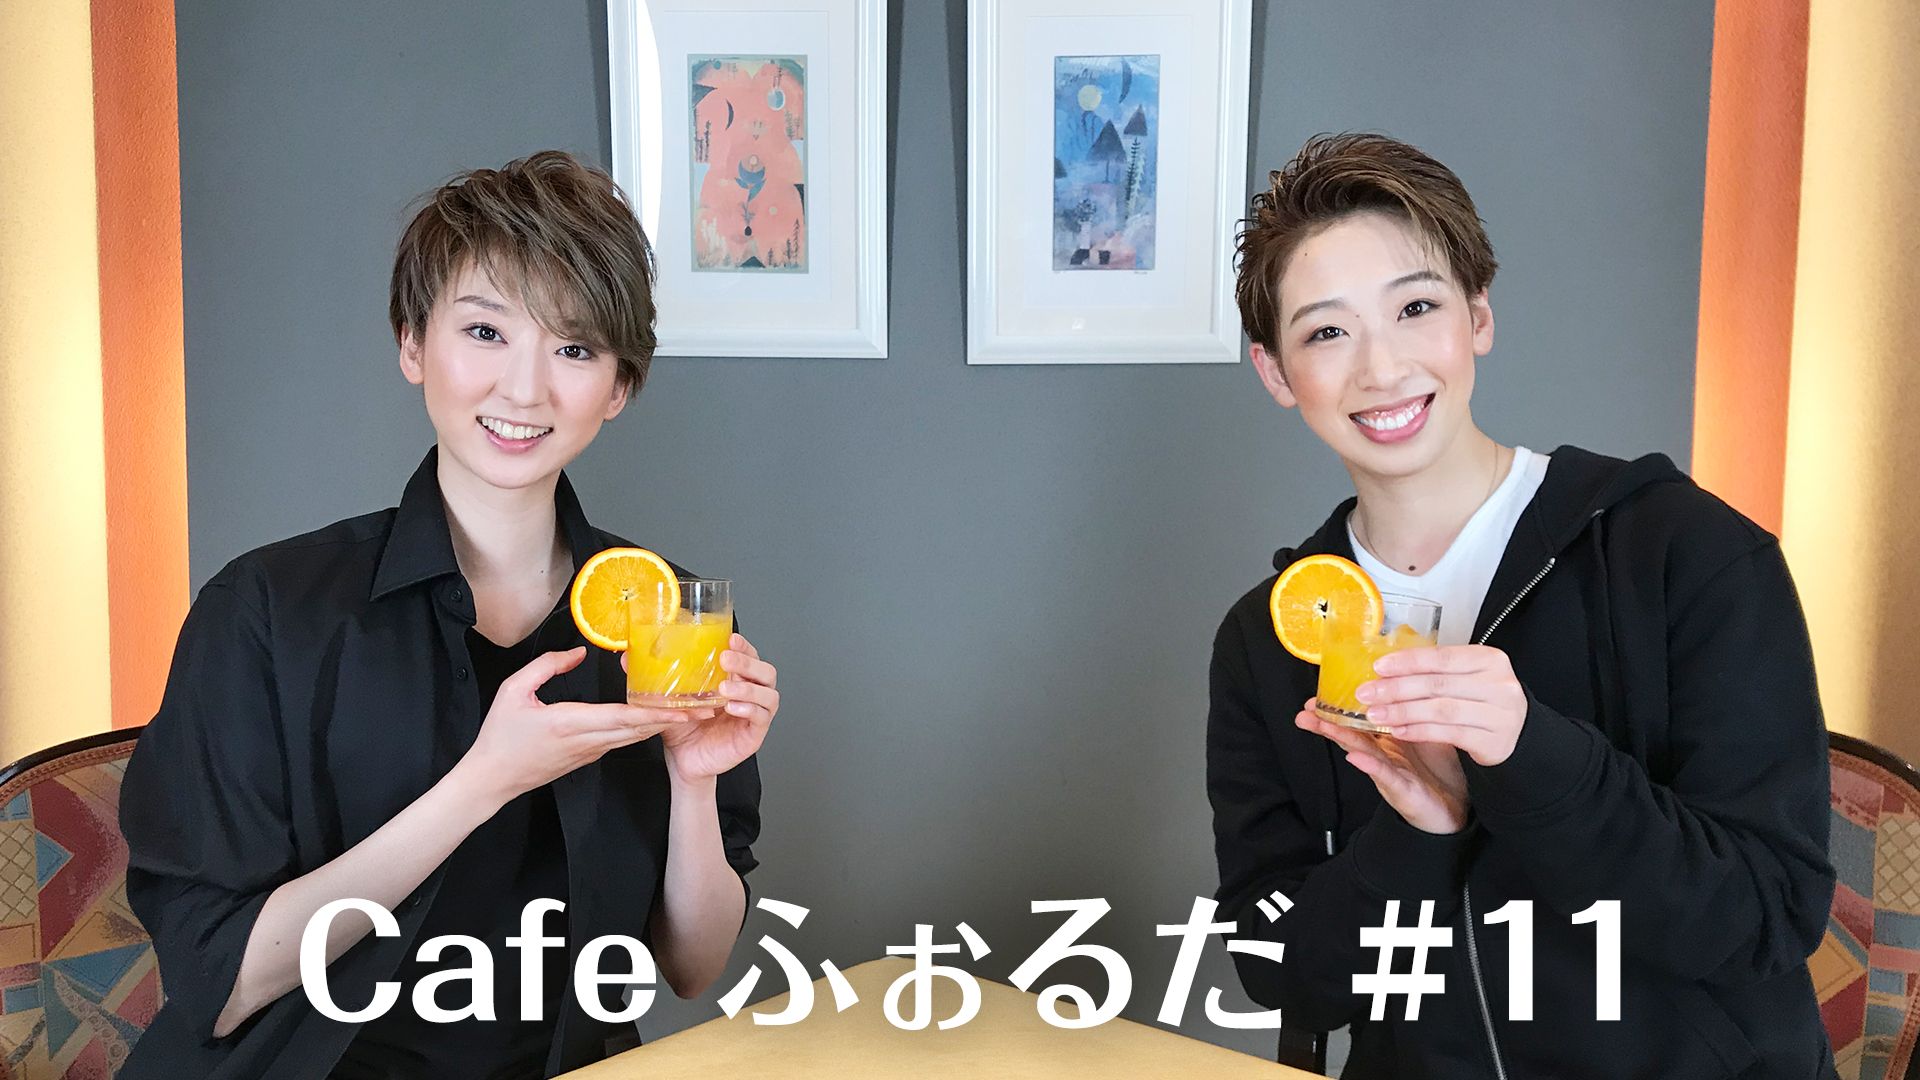 Cafe ふぉるだ #11